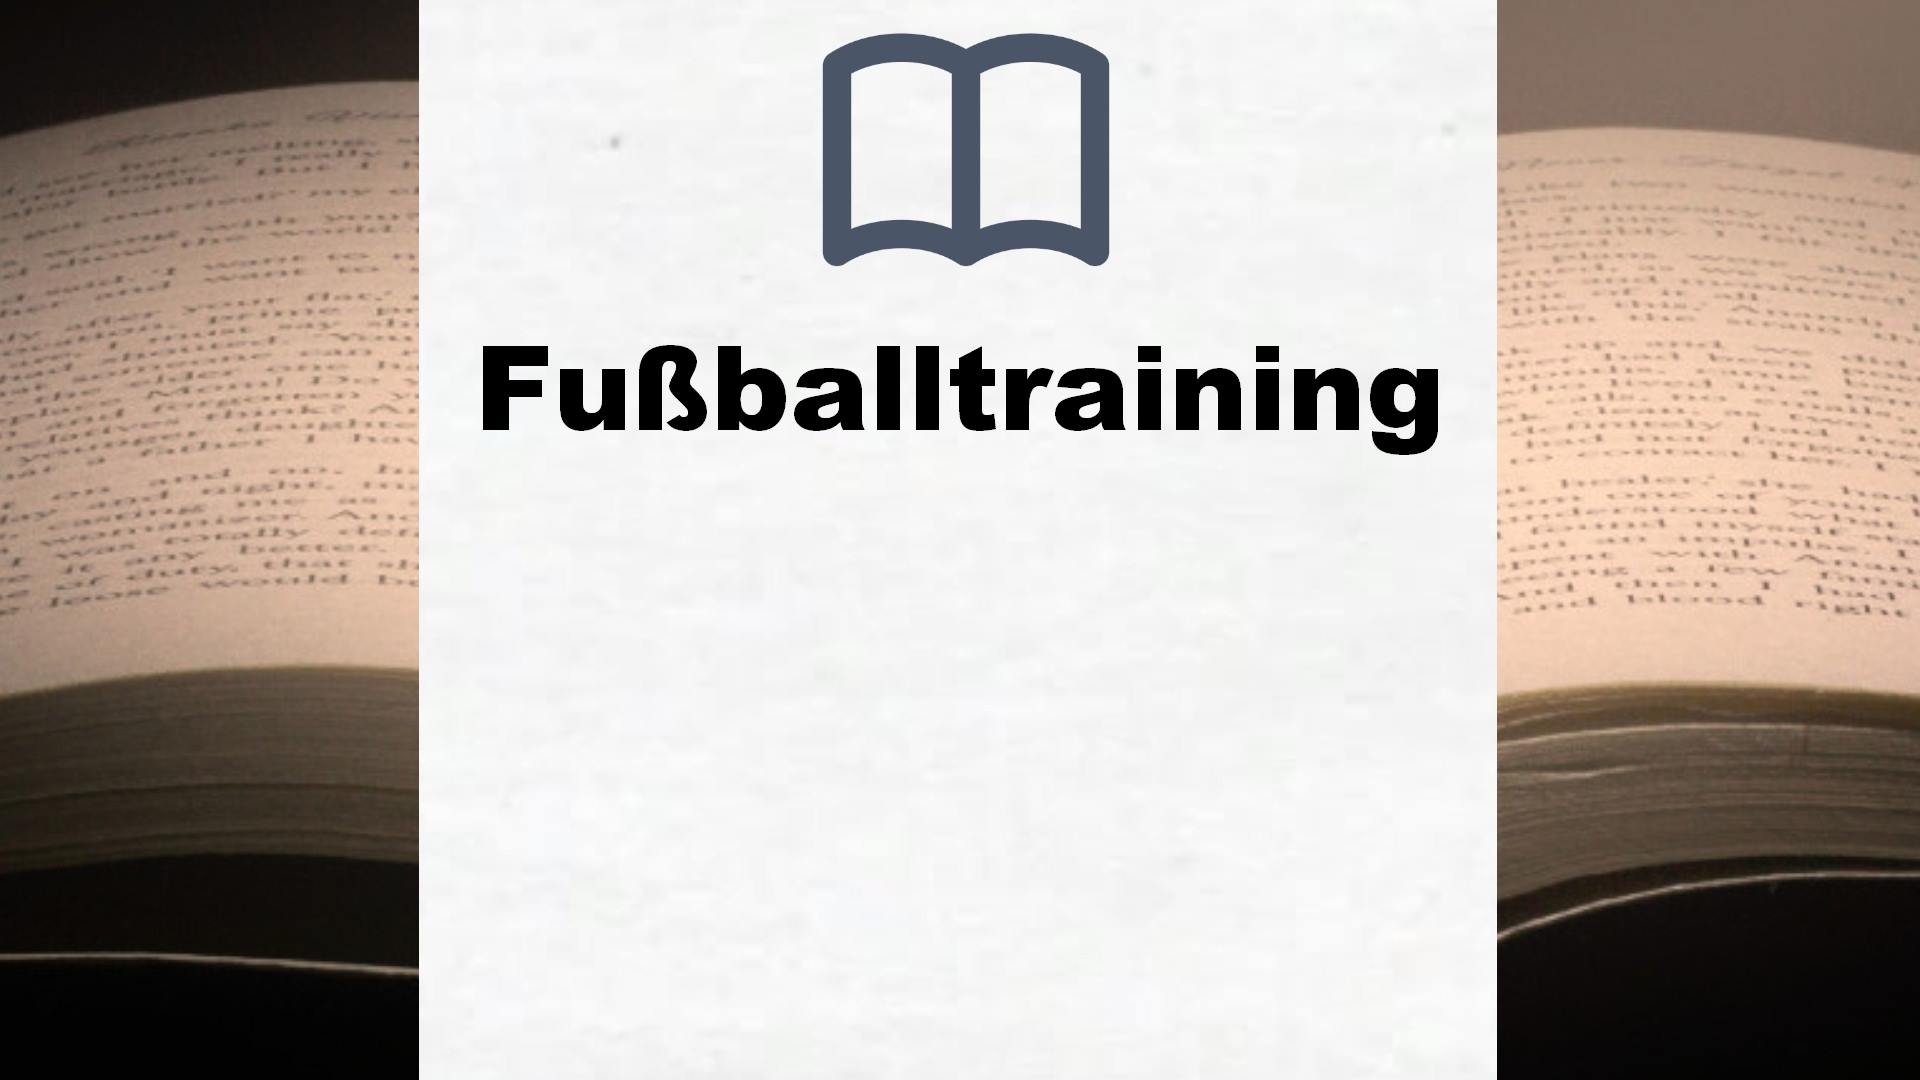 Bücher über Fußballtraining